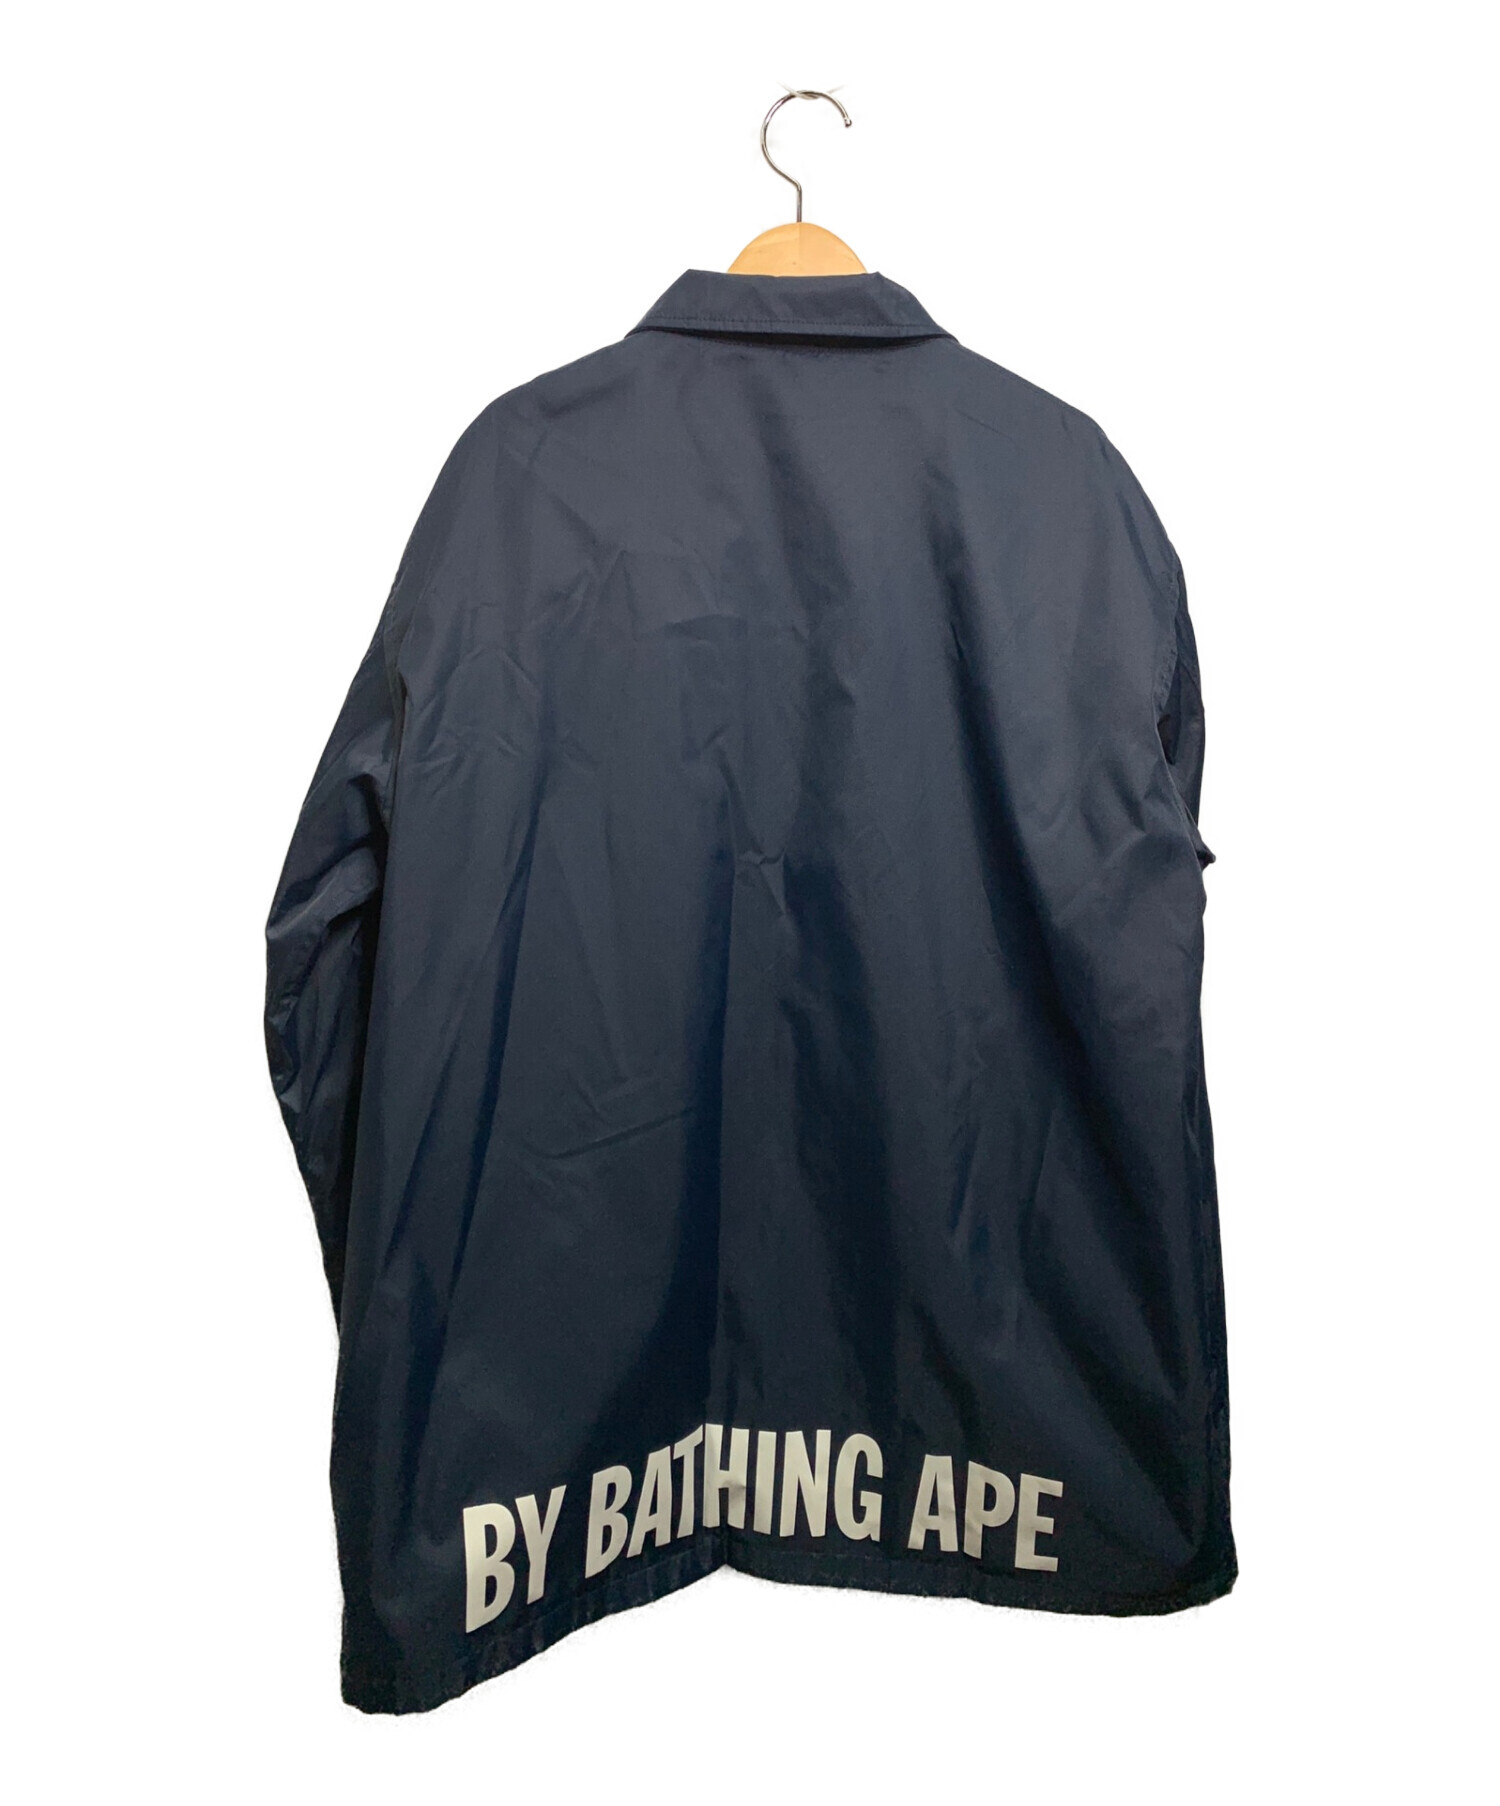 A BATHING APE (ア ベイシング エイプ) コーチジャケット ブルー サイズ:XL